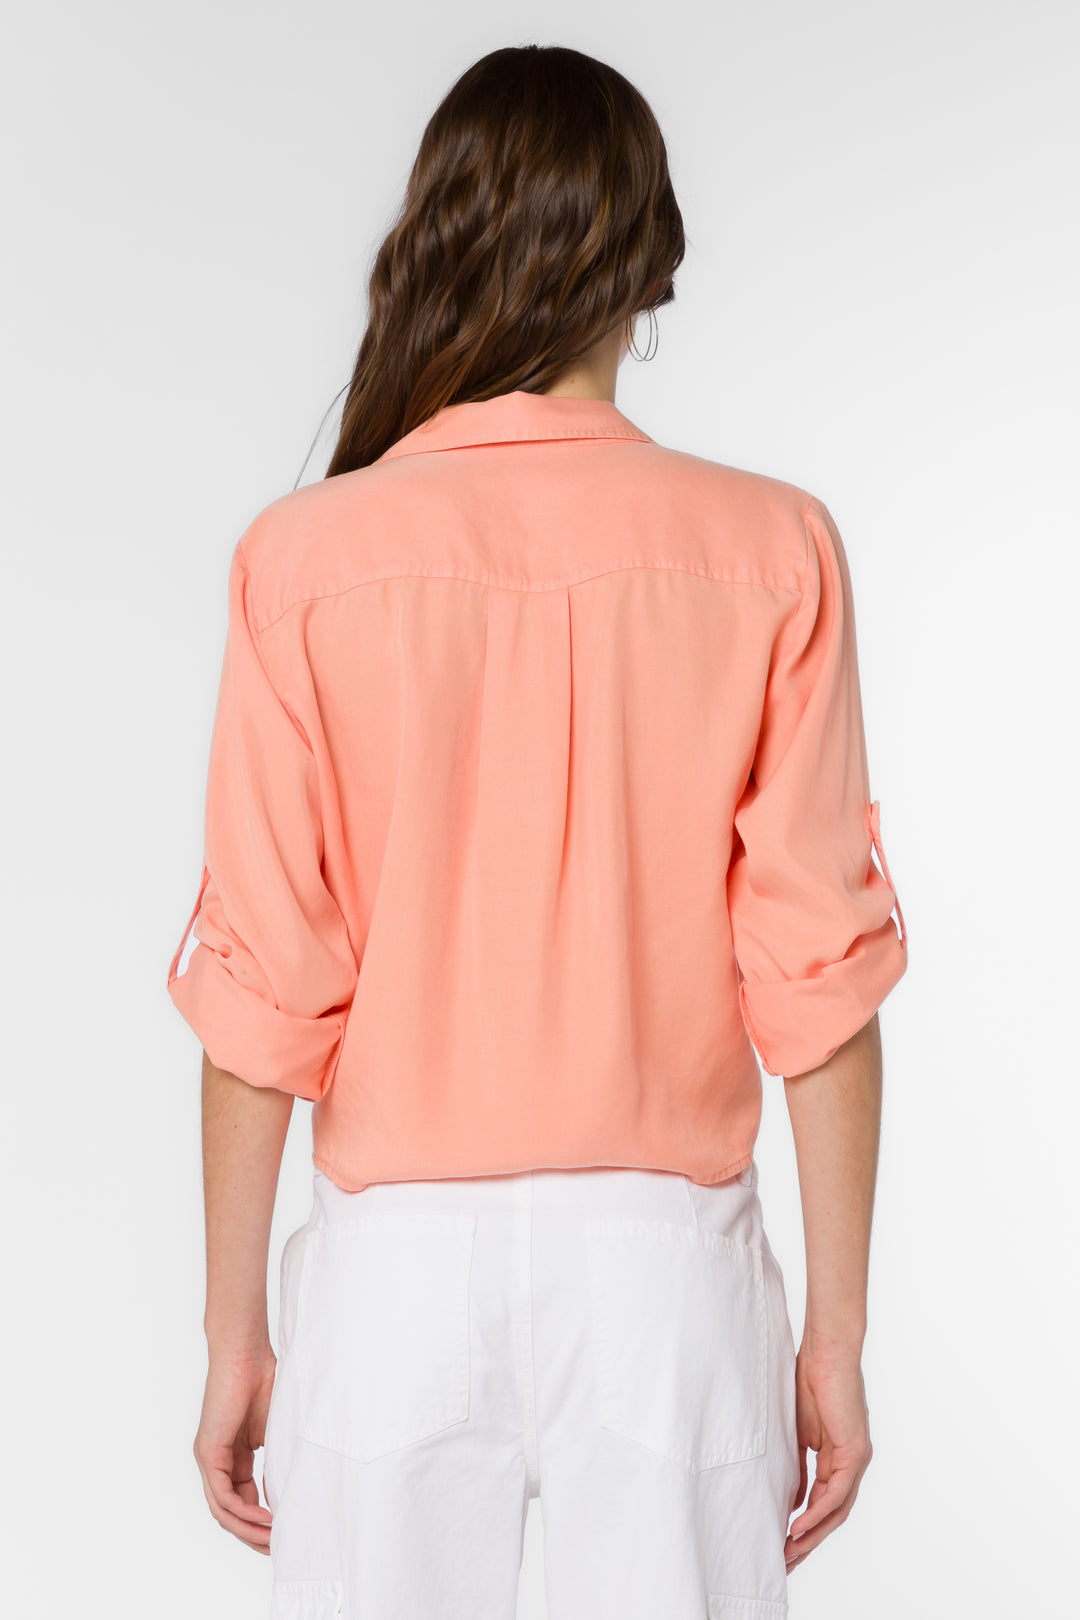 Solange Light Coral Shirt - Tops - Velvet Heart Clothing